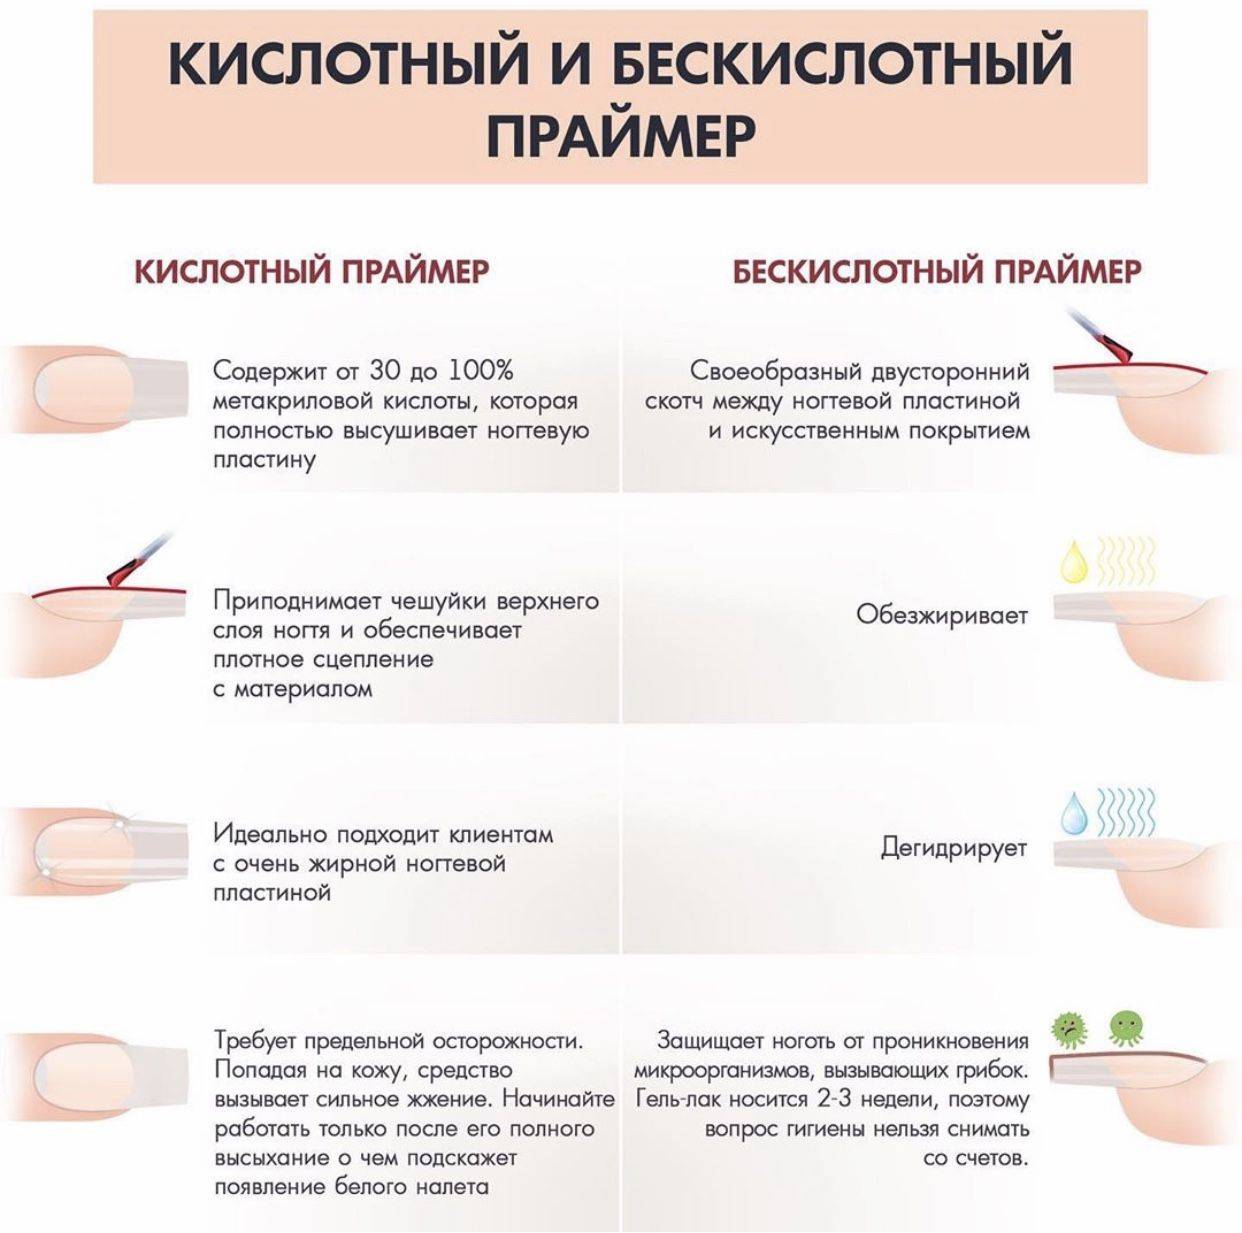 Наращивание ногтей - modnail.ru - красивый маникюр